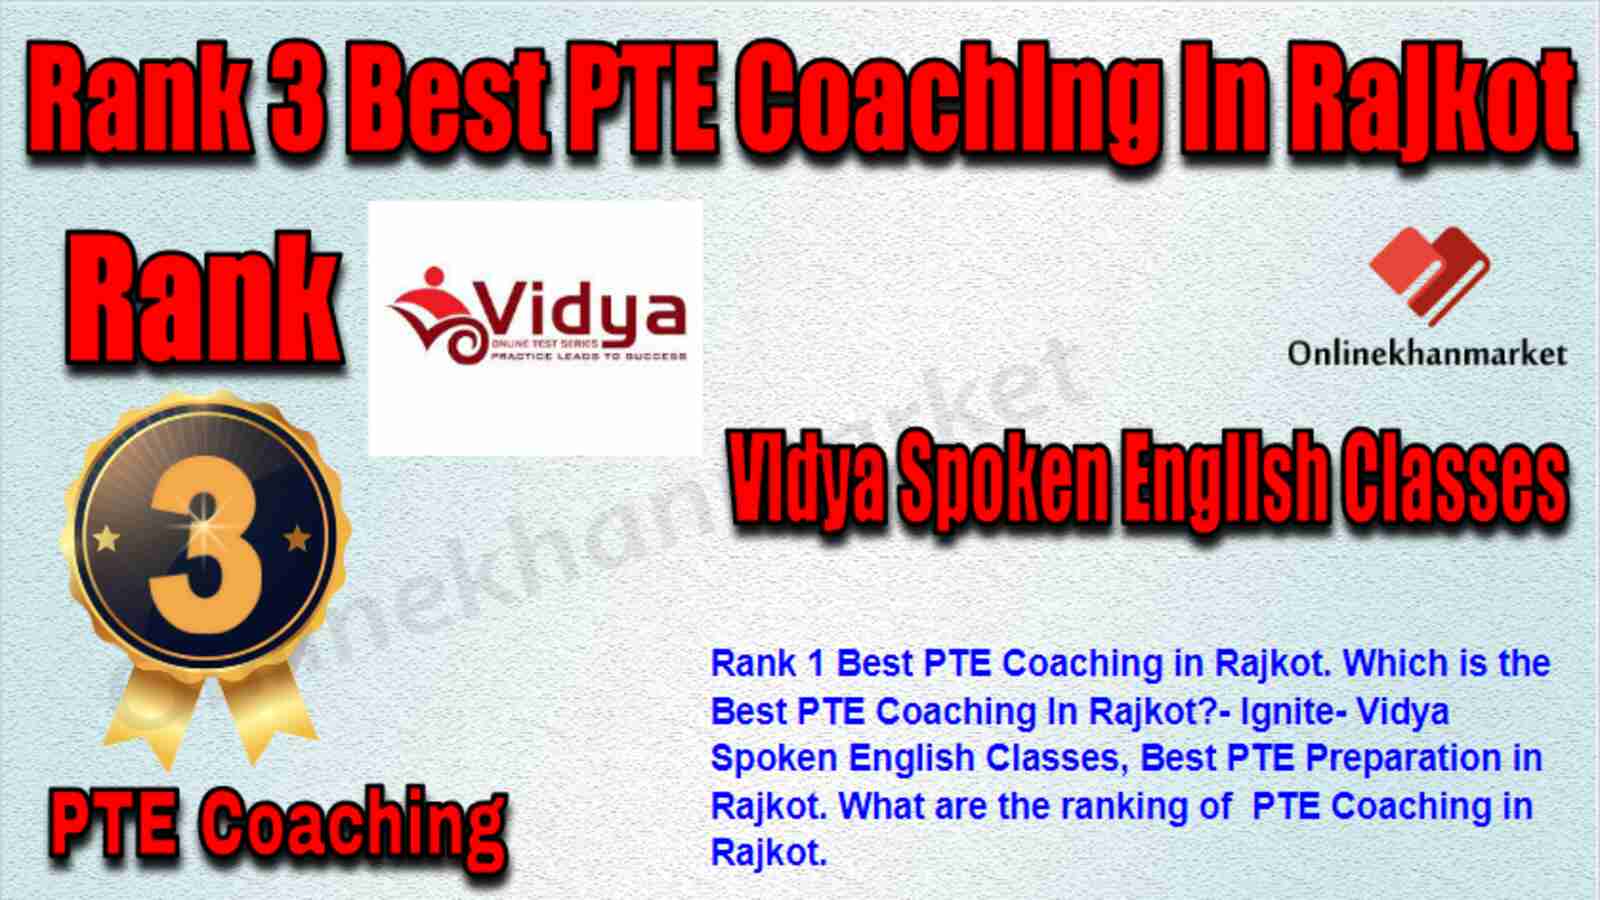 Rank 3 Best PTE Coaching in Rajkot